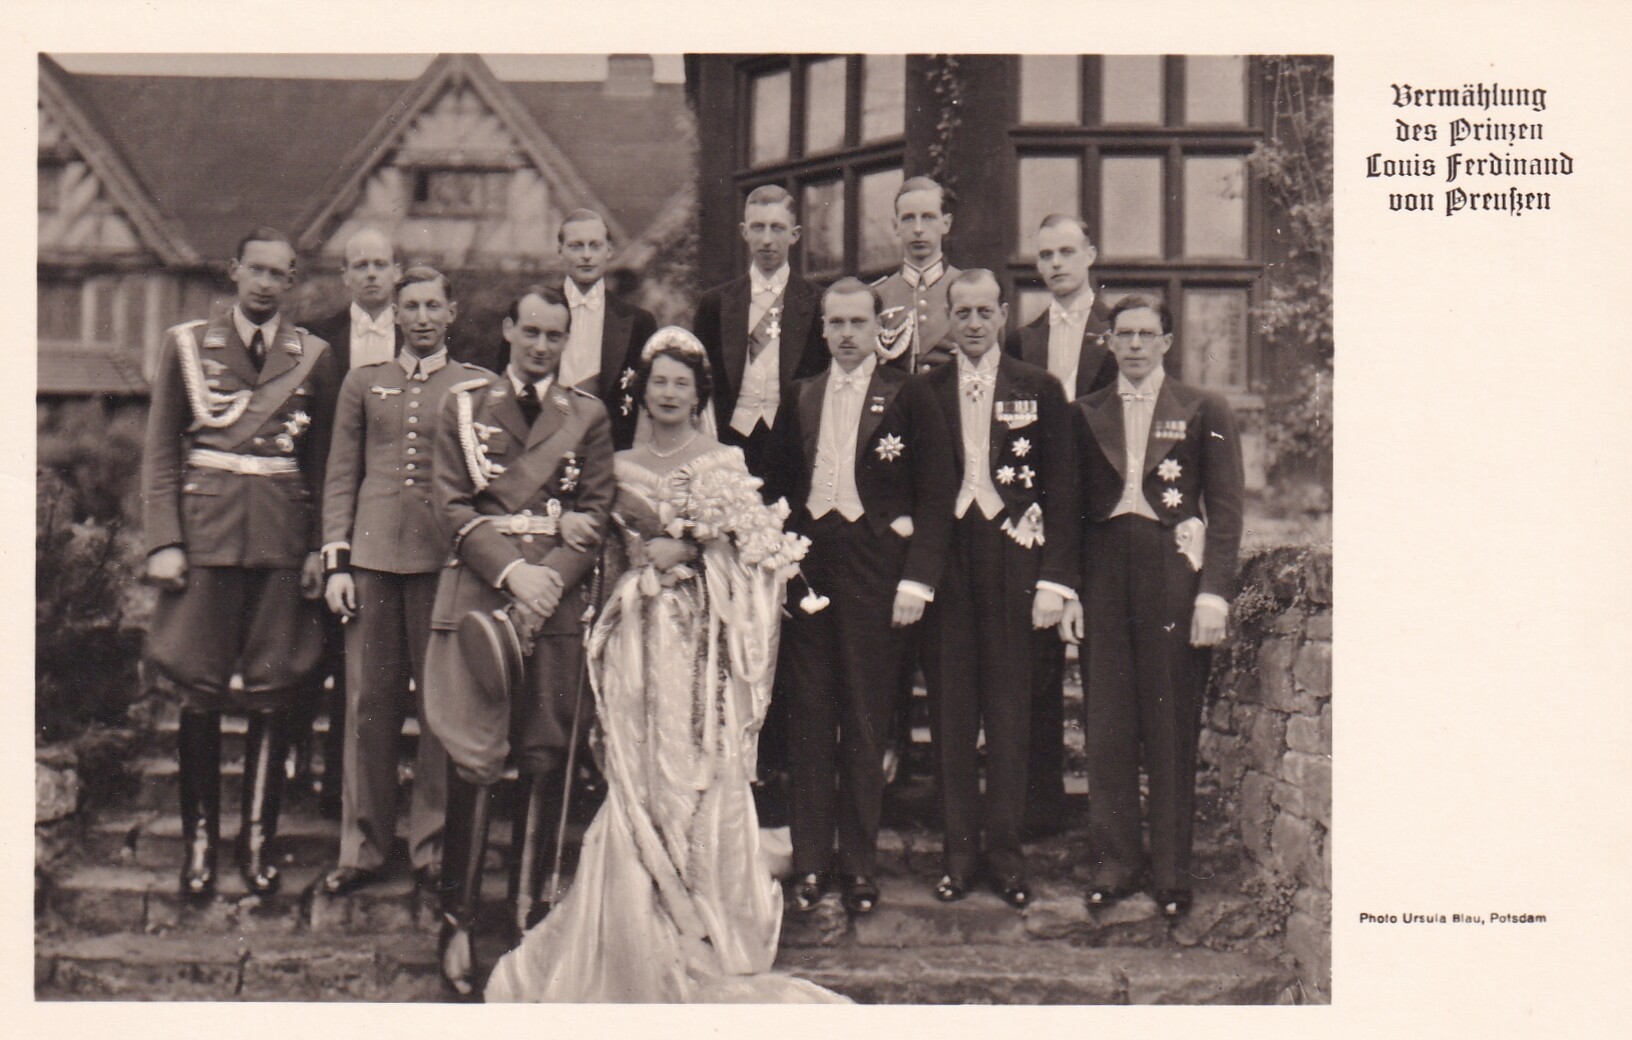 Bildpostkarte mit Gruppenfoto von der Hochzeit des Louis Ferdinand Prinz von Preußen (1907-1994) mit Kira Großfürstin von Russland (1909-1967), 2.5.19 (Schloß Wernigerode GmbH RR-F)